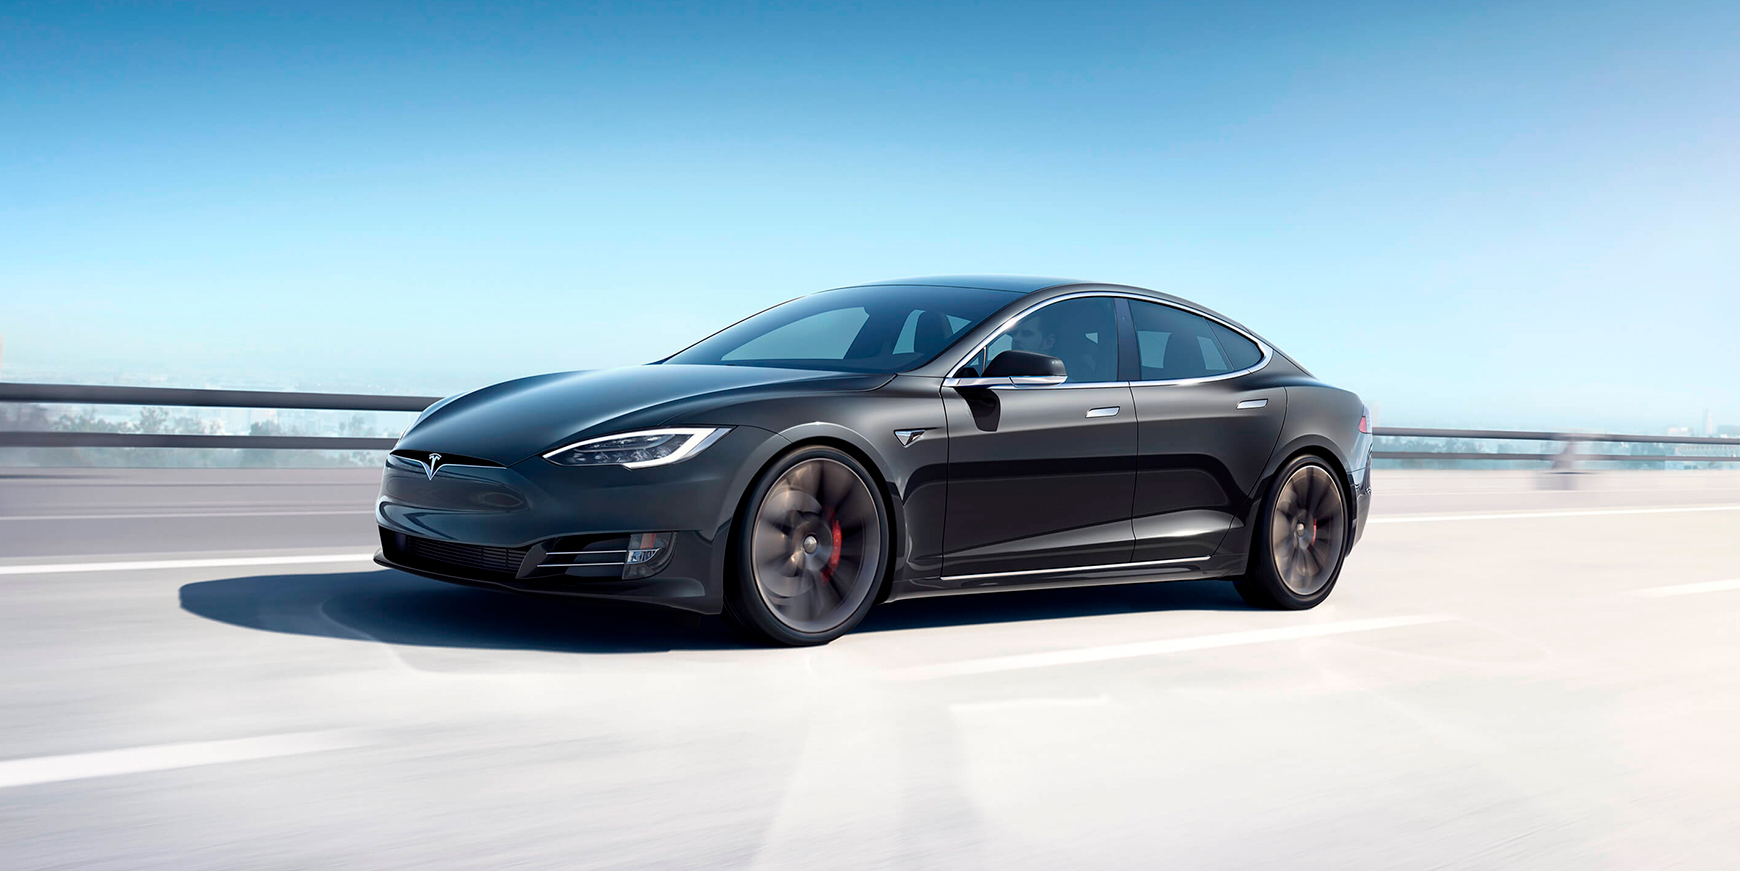  Tesla  ejere k rer mere end andre  bilejere